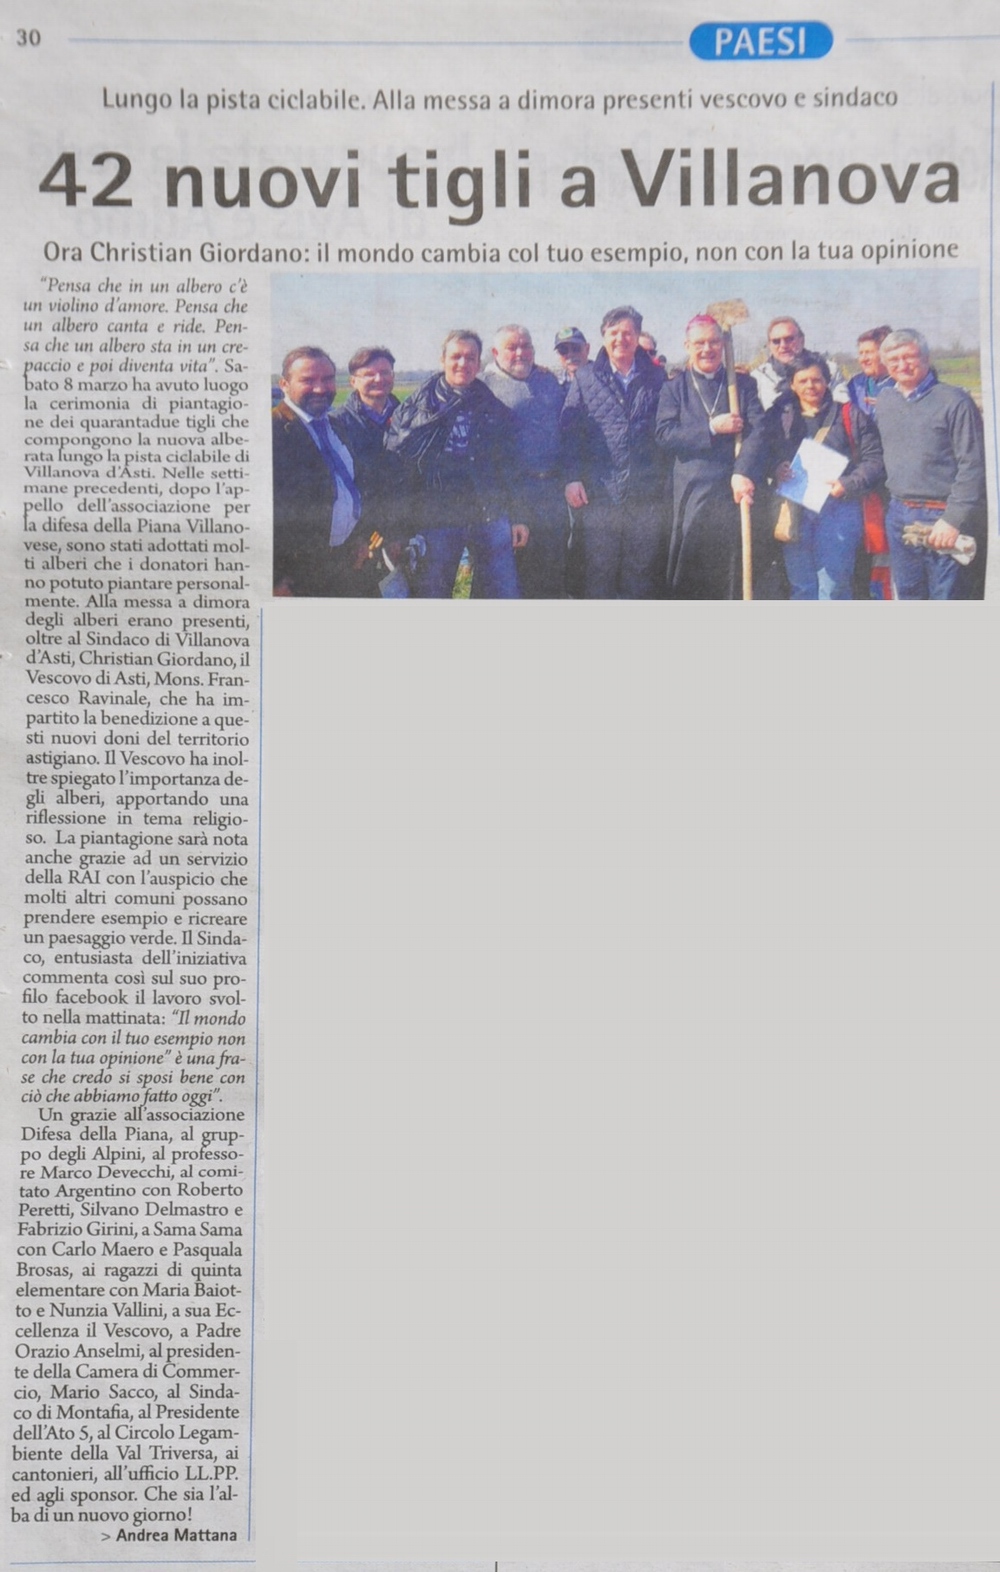 Articolo della Gazzetta d'Asti  sulla cerimonia di piantagione dei 42 tigli per la realizzazione del nuovo viale alberato della pista ciclabile di Villanova d'Asti (sabato 8 marzo 2014).